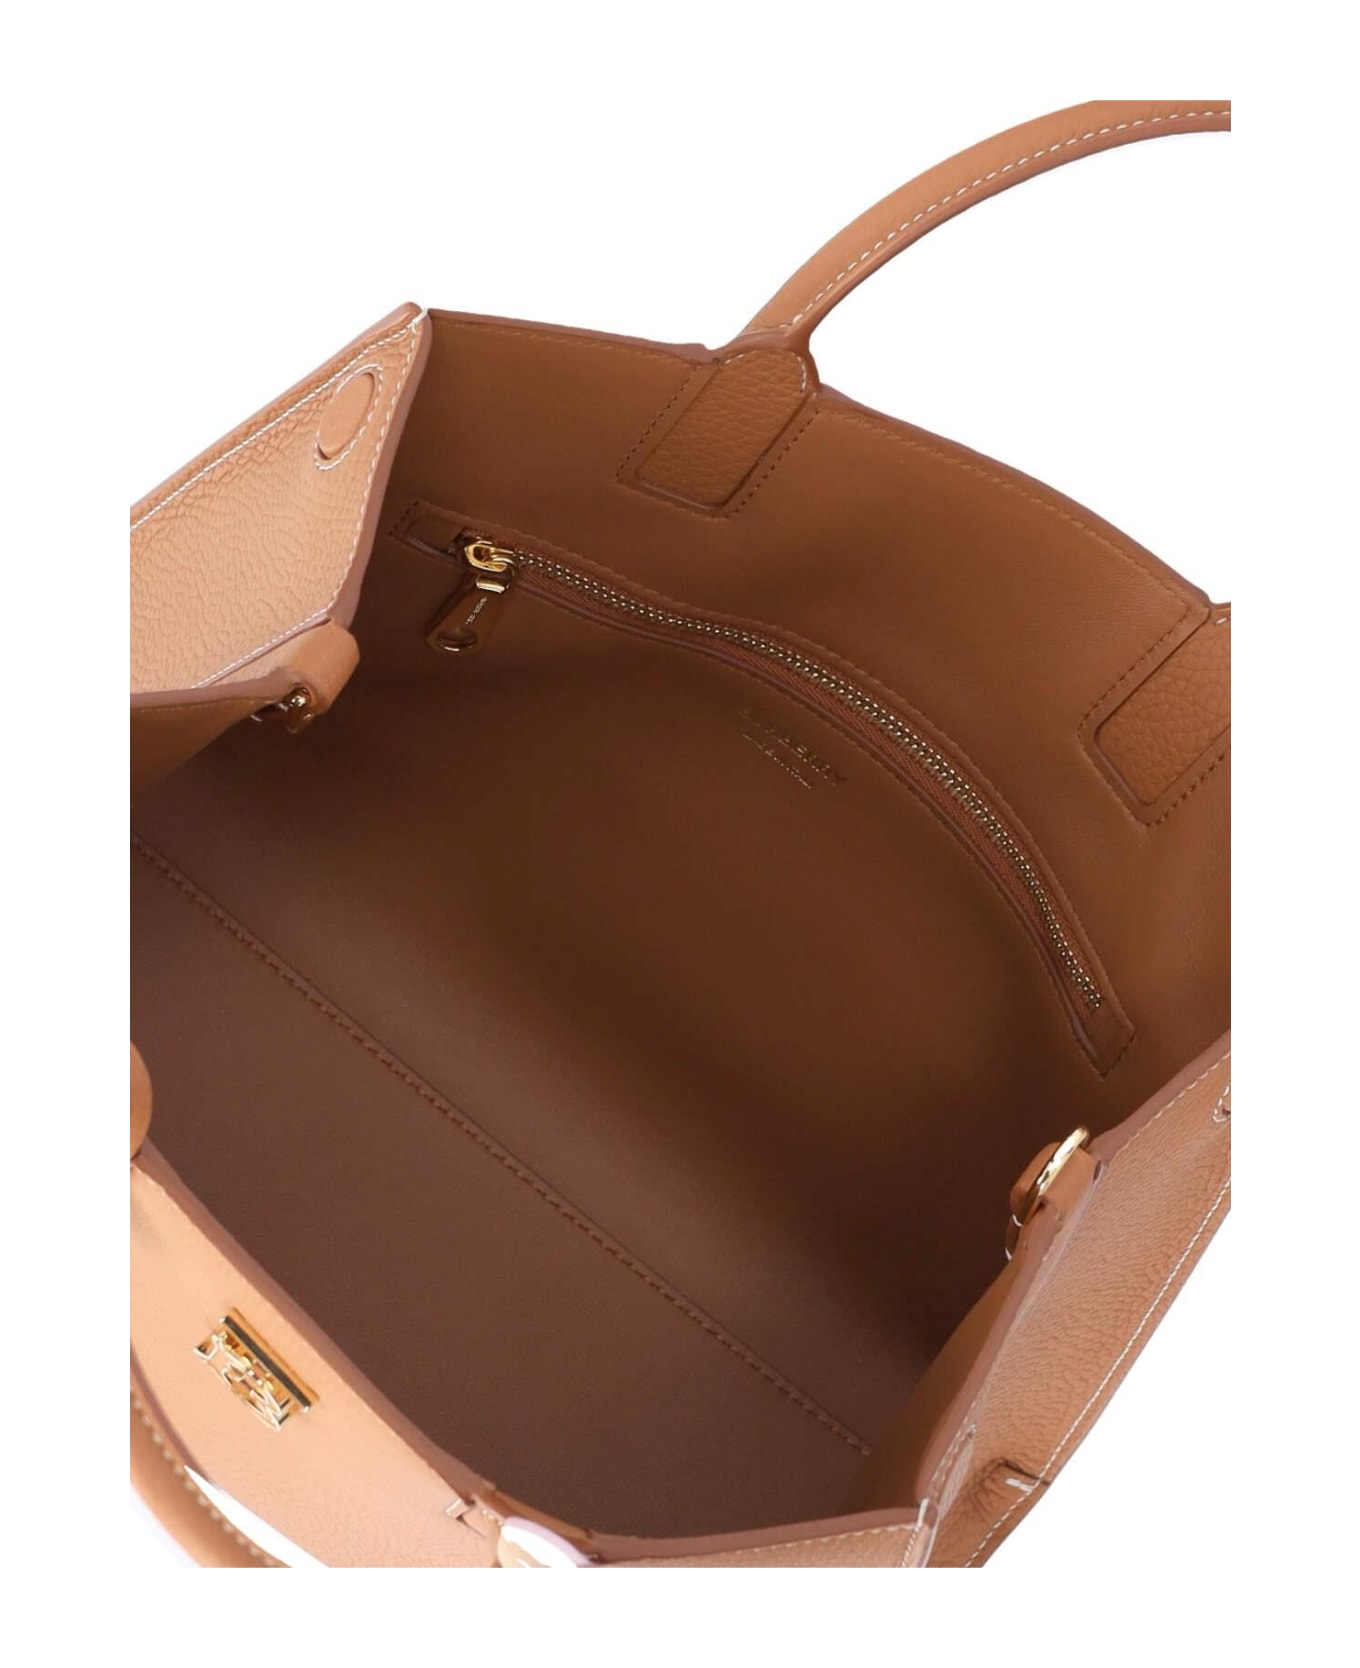 Burberry Mini Bag 'frances' - Warm russet brown